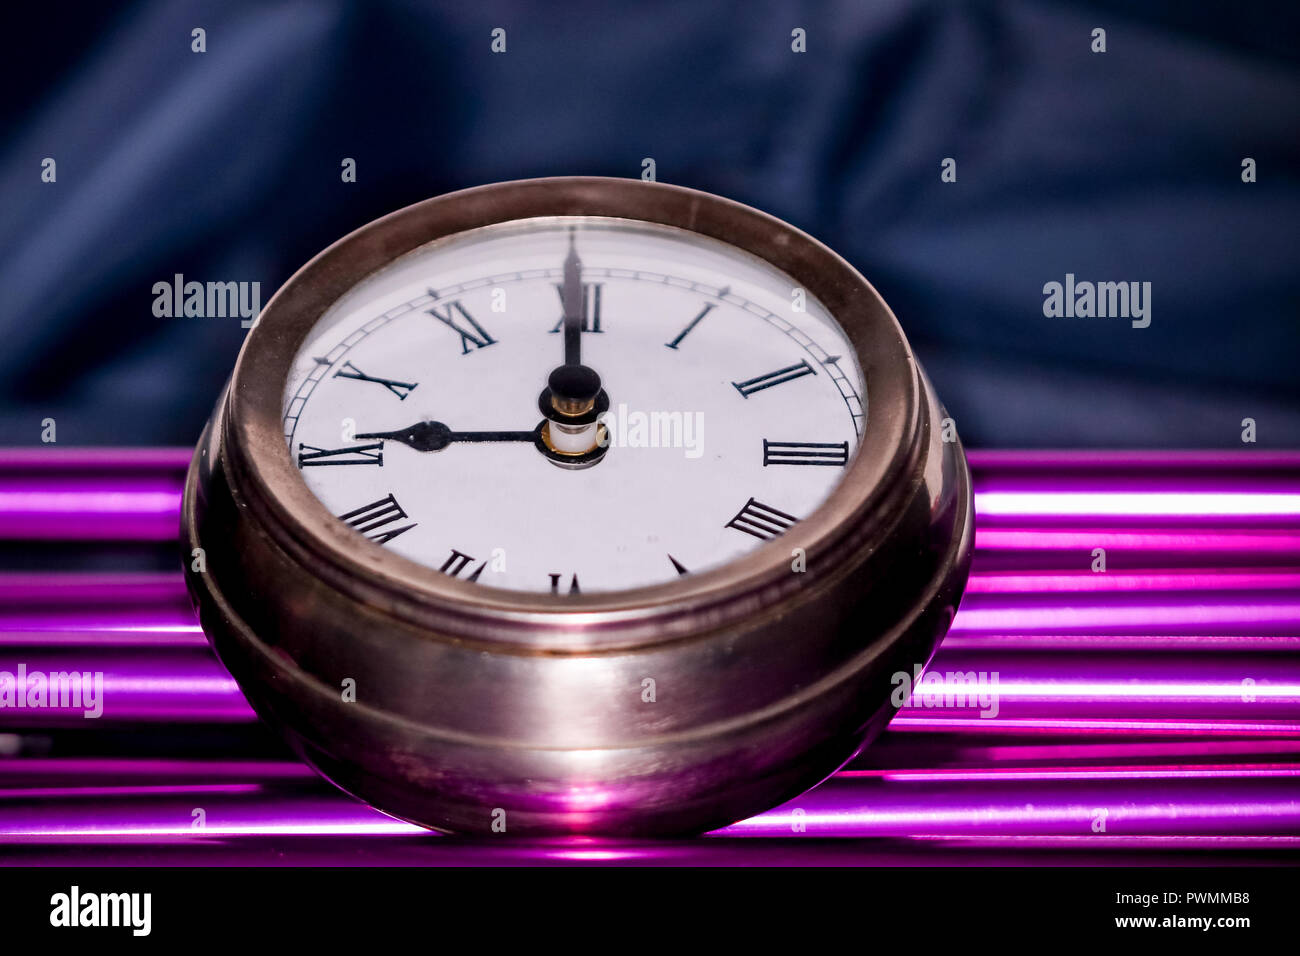 Grande orologio da tasca immagini e fotografie stock ad alta risoluzione -  Alamy